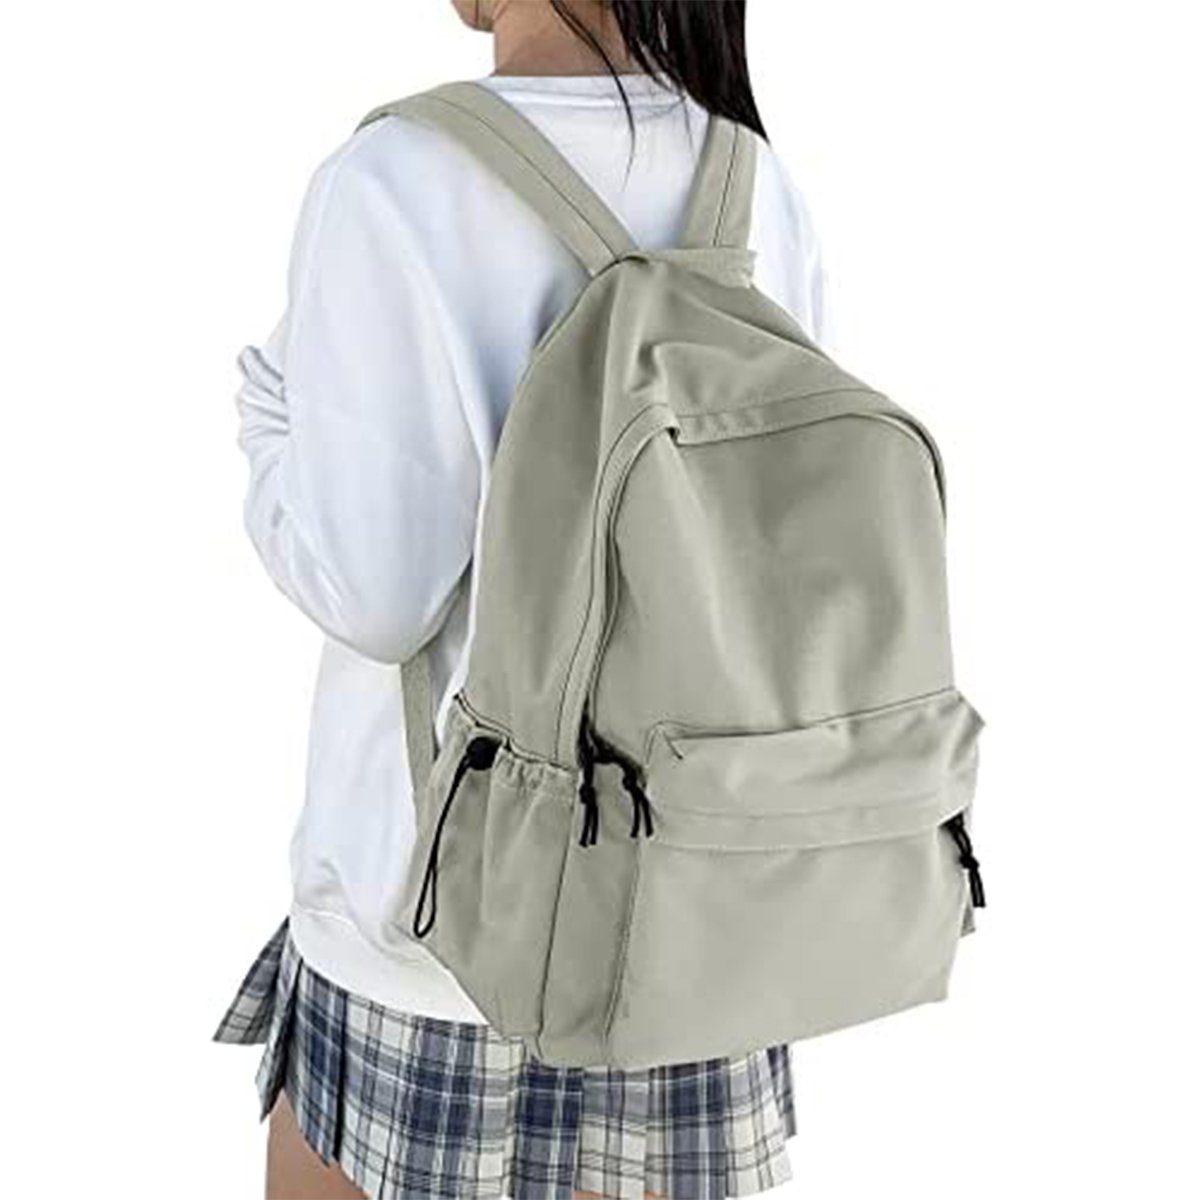 XDeer Schulrucksack Schulrucksack Damen Travel Schultaschen, 15,6 Zoll Laptop Rucksack für Mädchen im Teenageralter Bookbag Grün | Schulrucksäcke